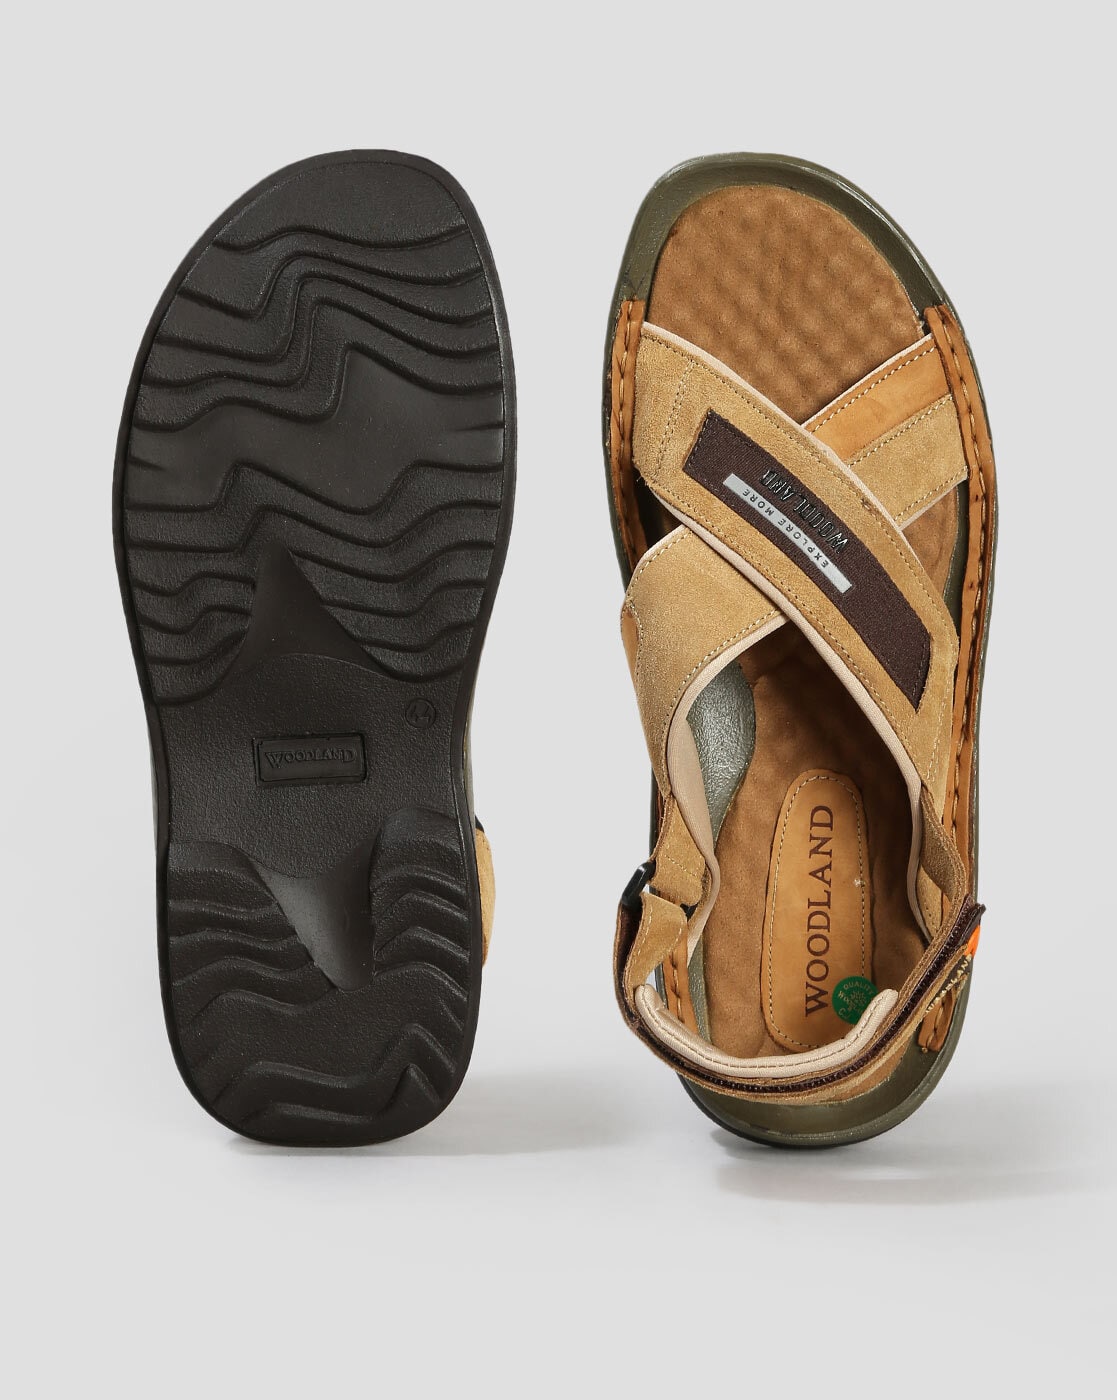 Woodland Men's Camel Leather Sandal-10 UK/India (44 EU) (GD 2184116) :  Amazon.in: Fashion